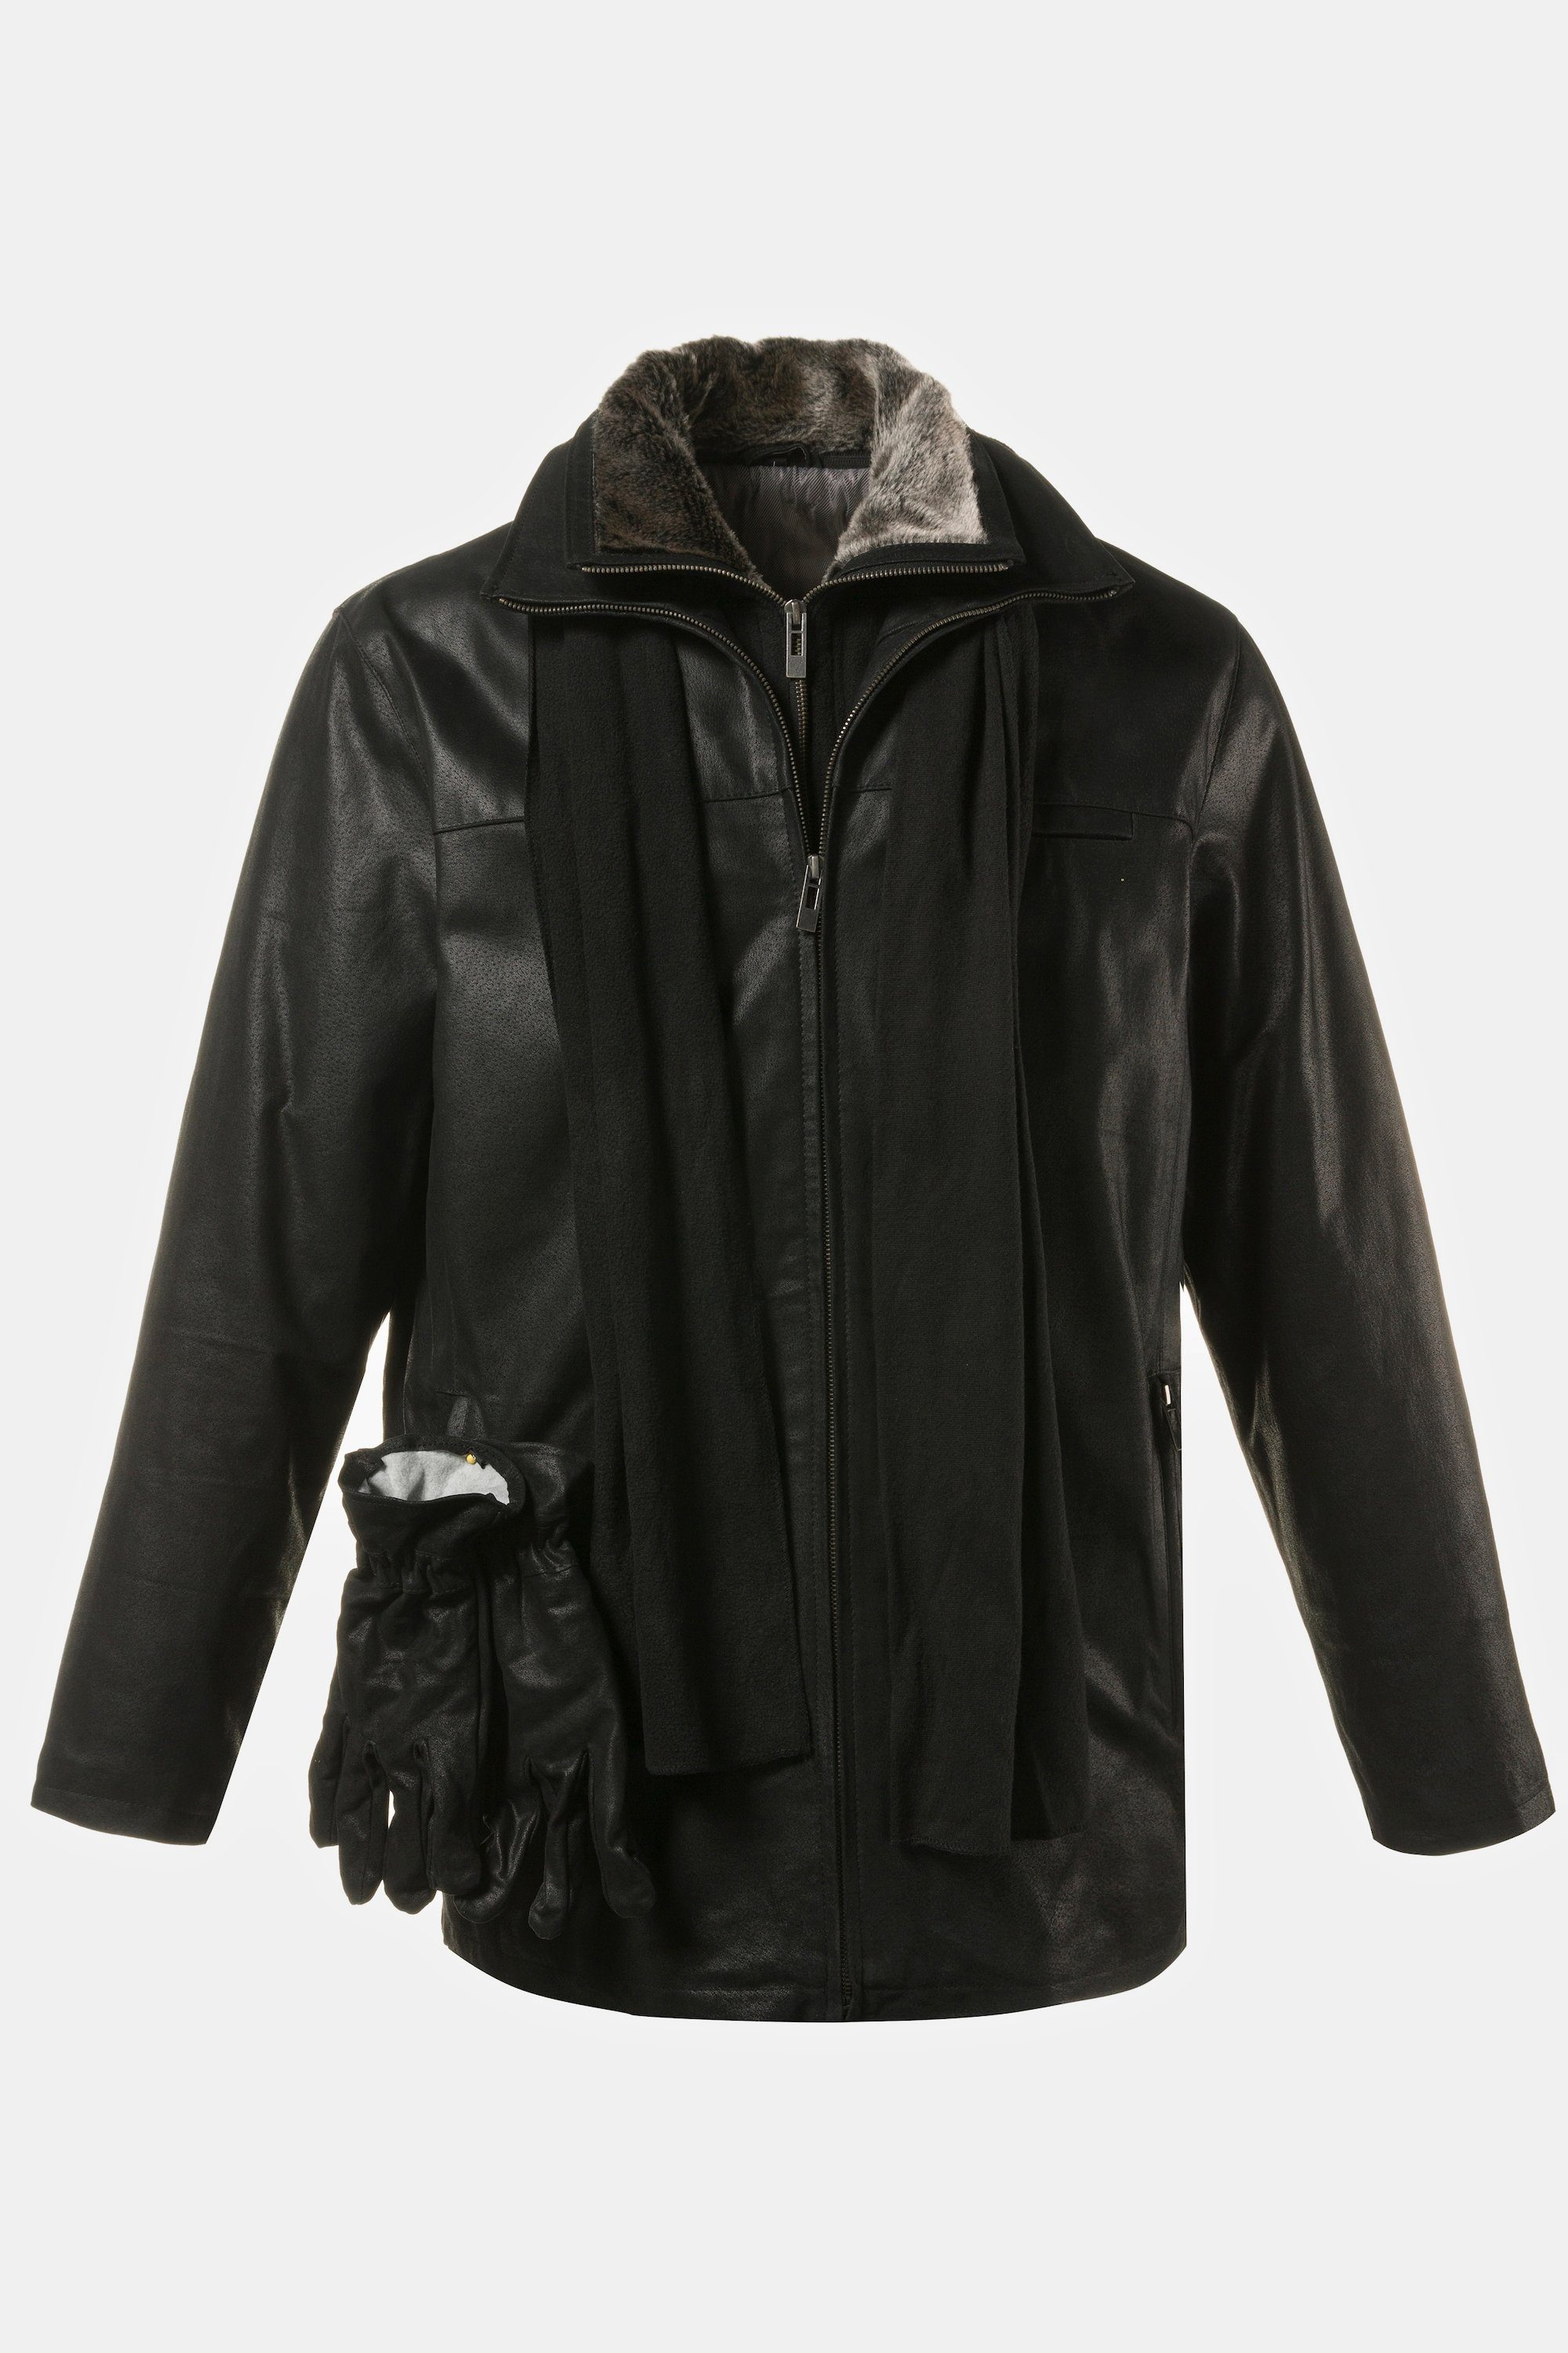 JP1880 Lederjacke Jacke Leder Porcleder dazu: schwarz gratis Leder-Handschuh